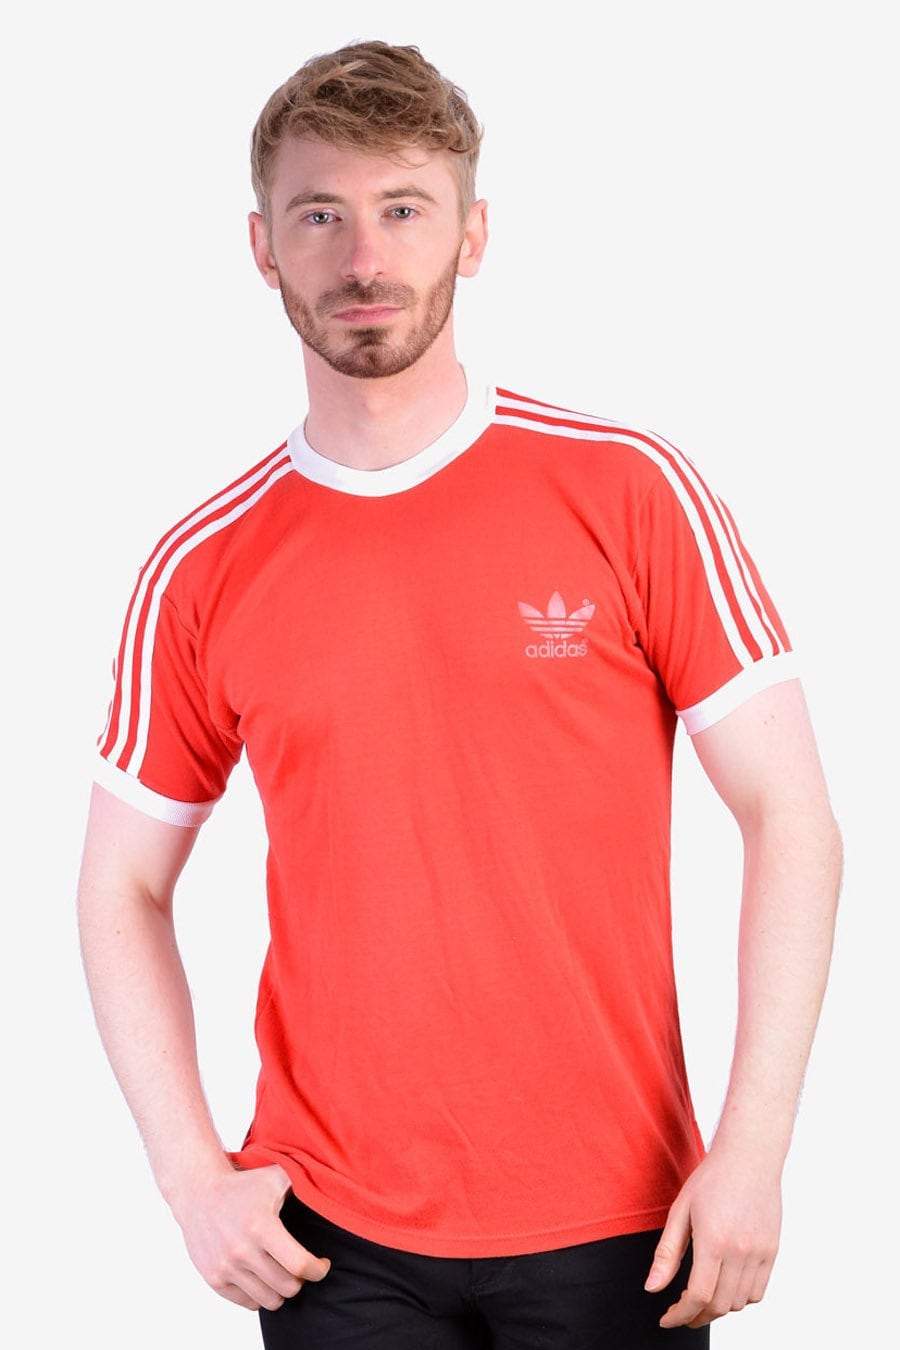 Vintage 1970 Adidas Red Ringer Camiseta Tamaño S Etsy